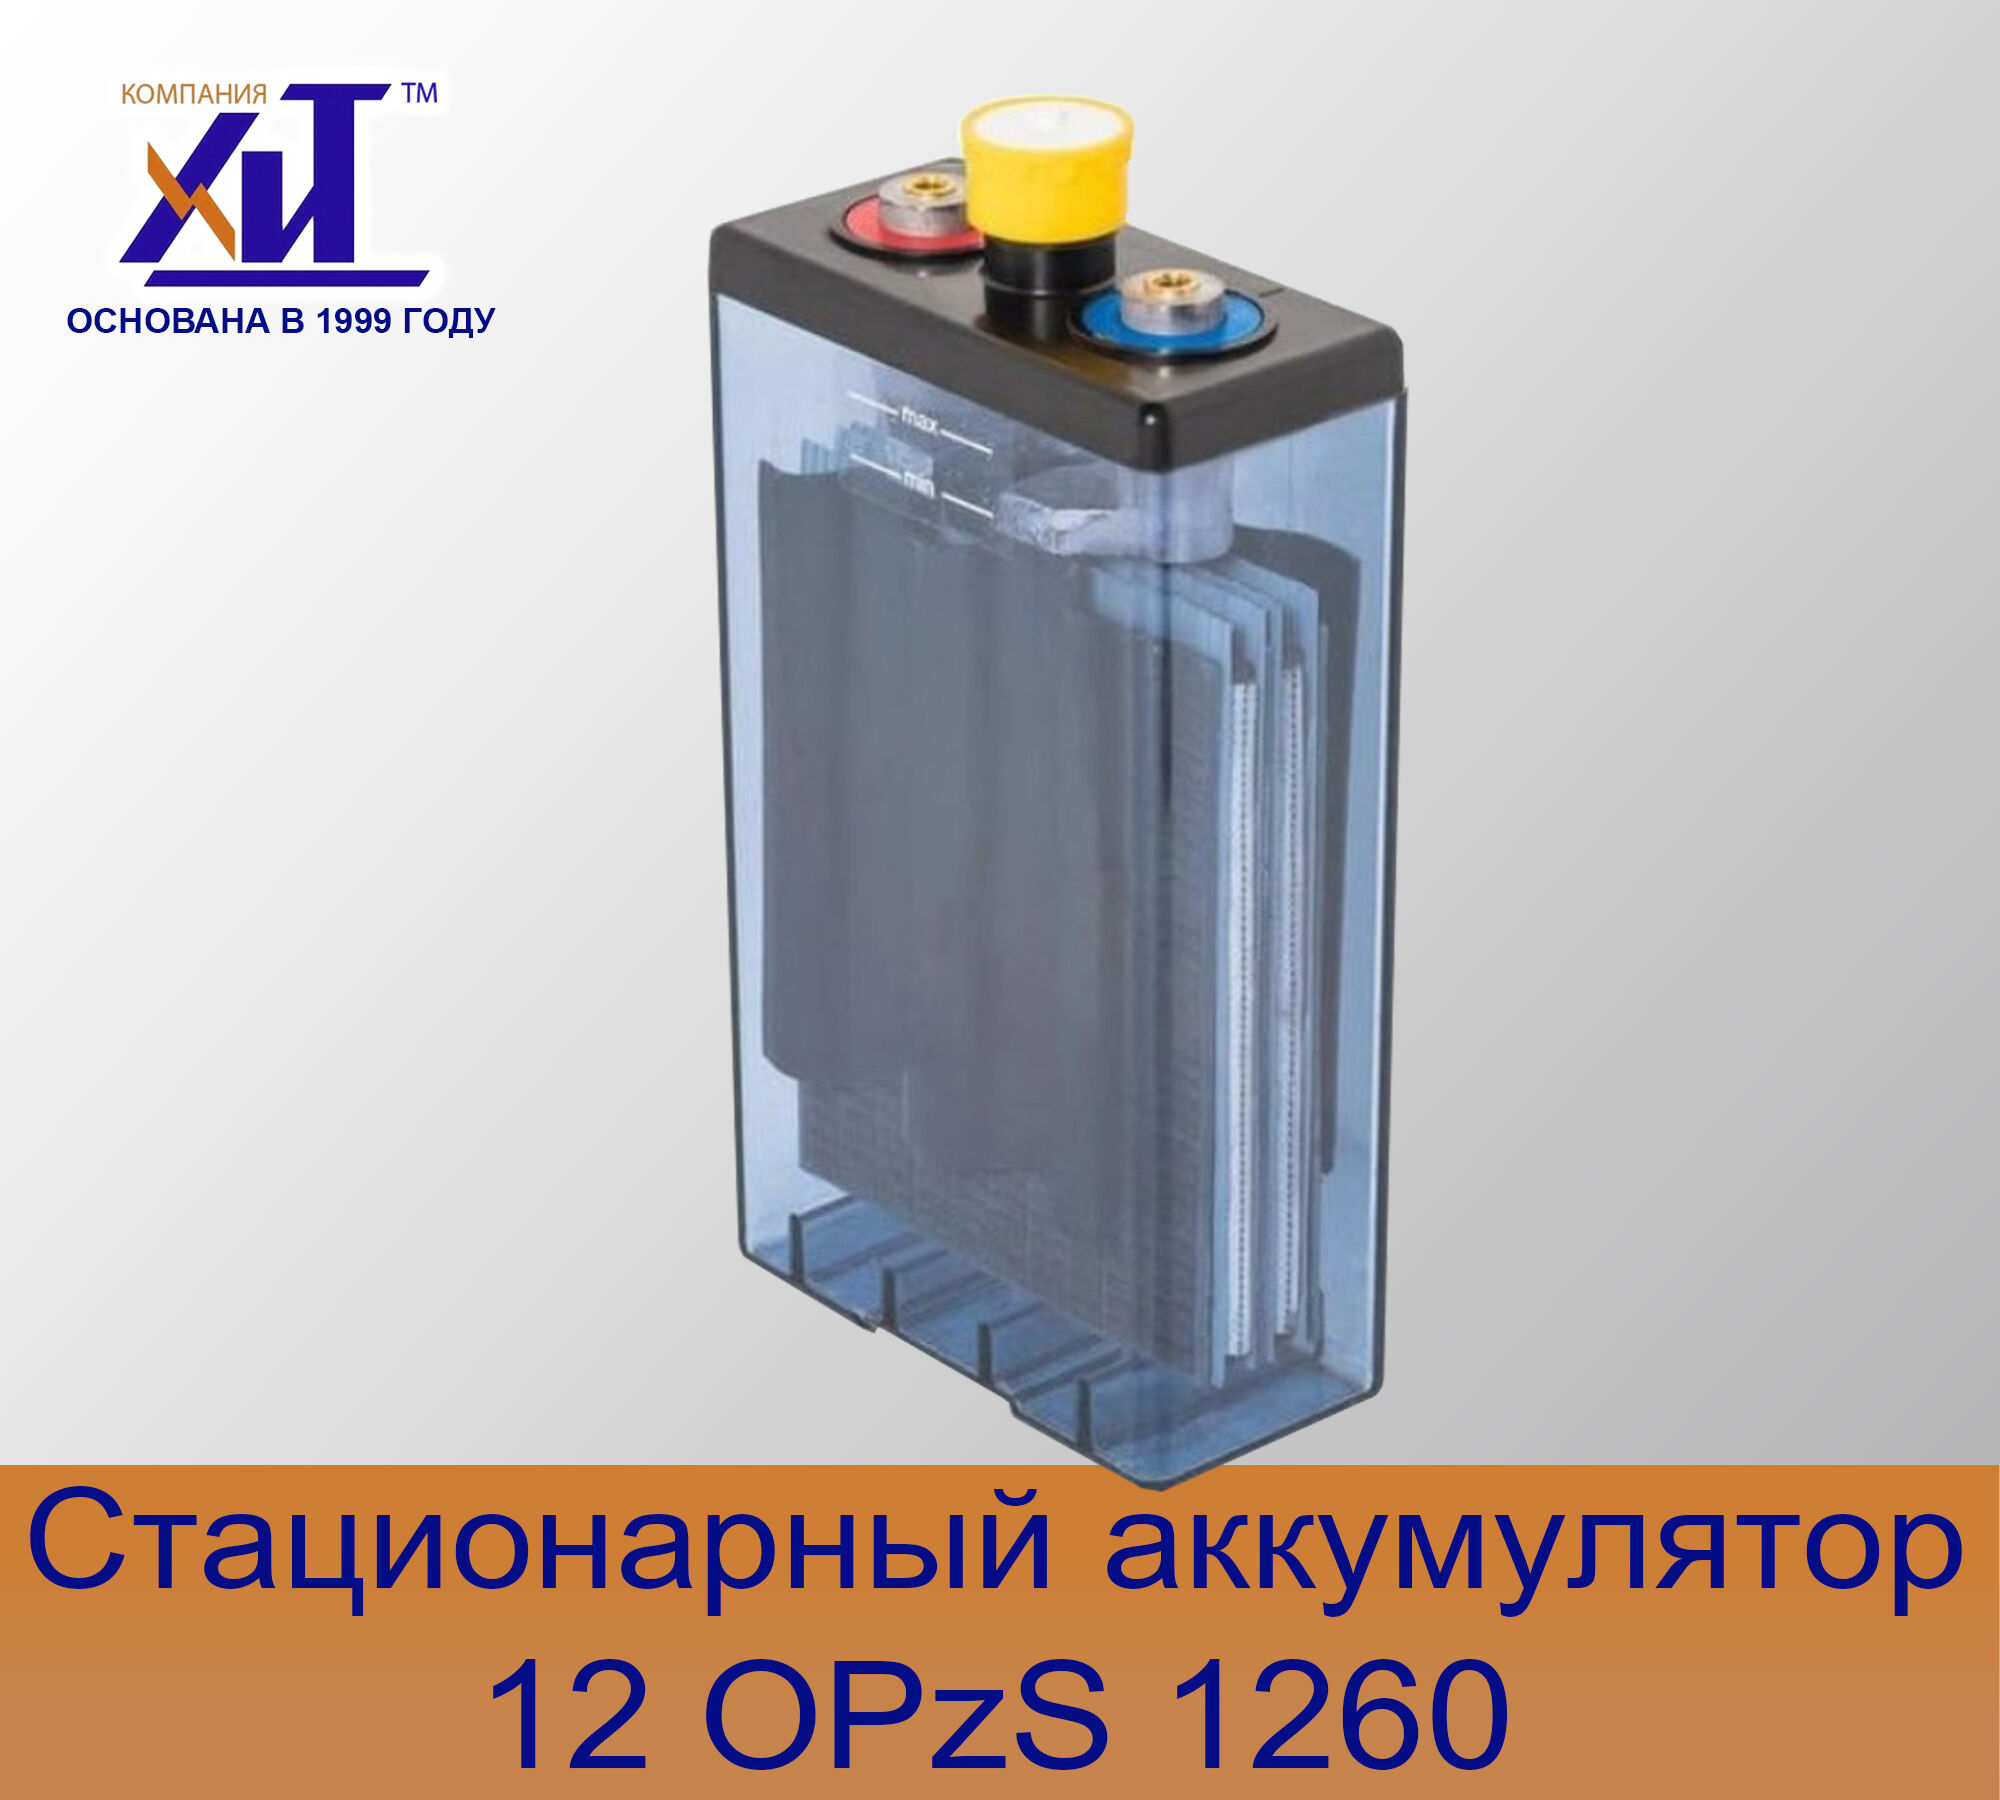 Аккумулятор 12OPzS1260